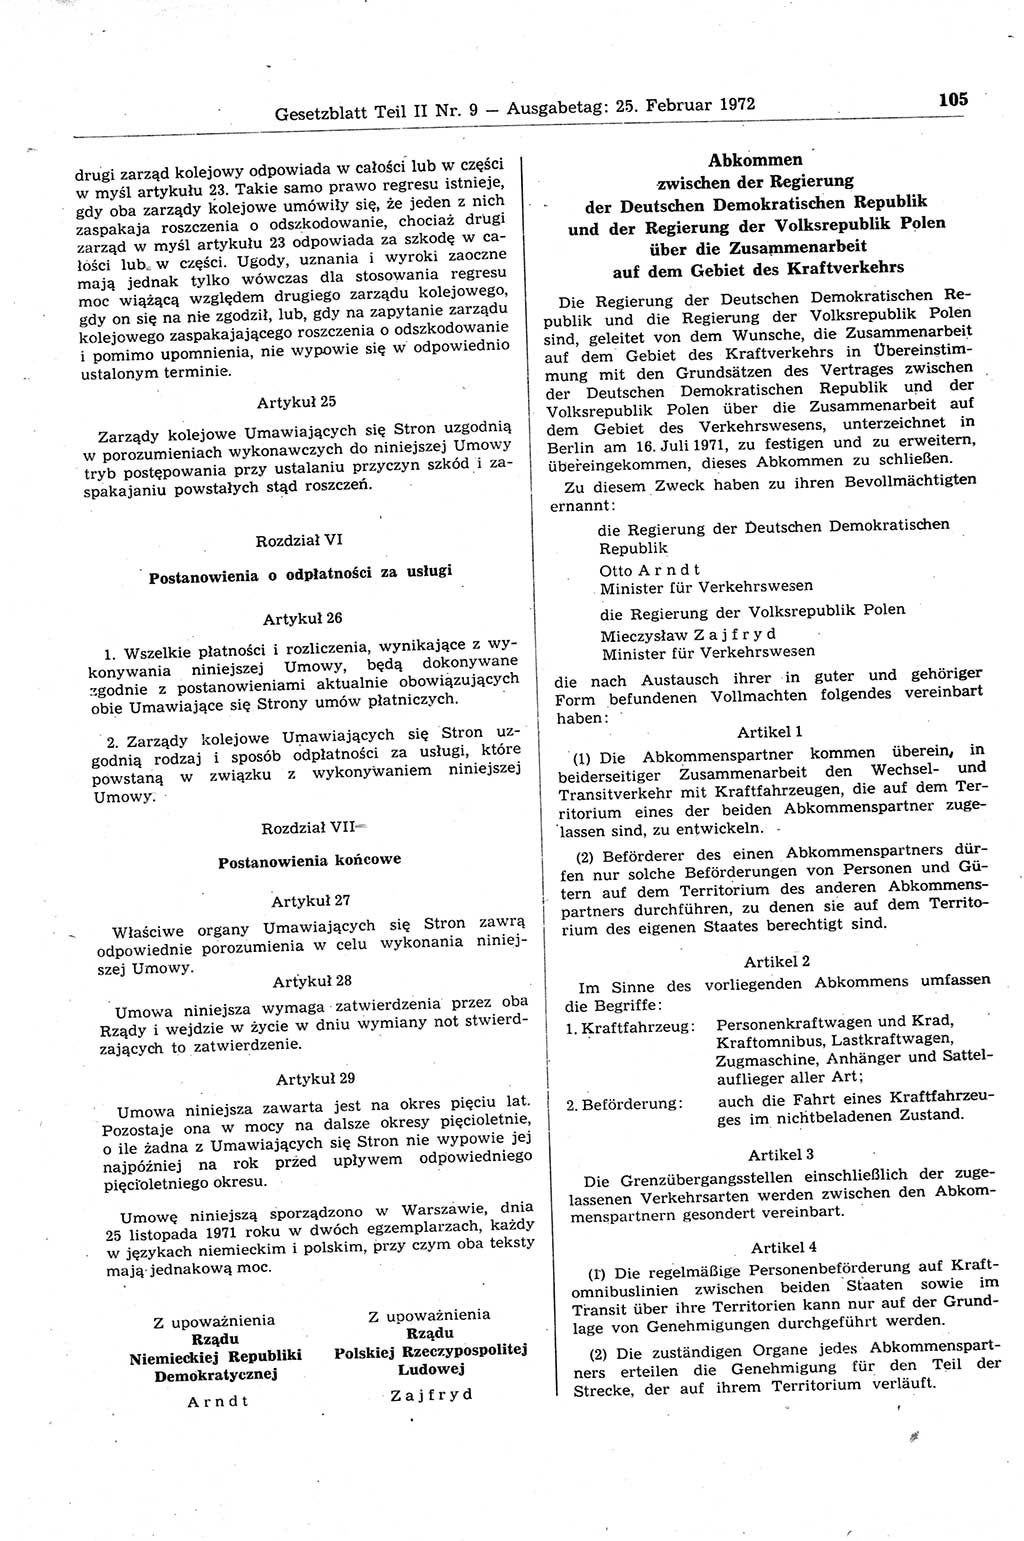 Gesetzblatt (GBl.) der Deutschen Demokratischen Republik (DDR) Teil ⅠⅠ 1972, Seite 105 (GBl. DDR ⅠⅠ 1972, S. 105)